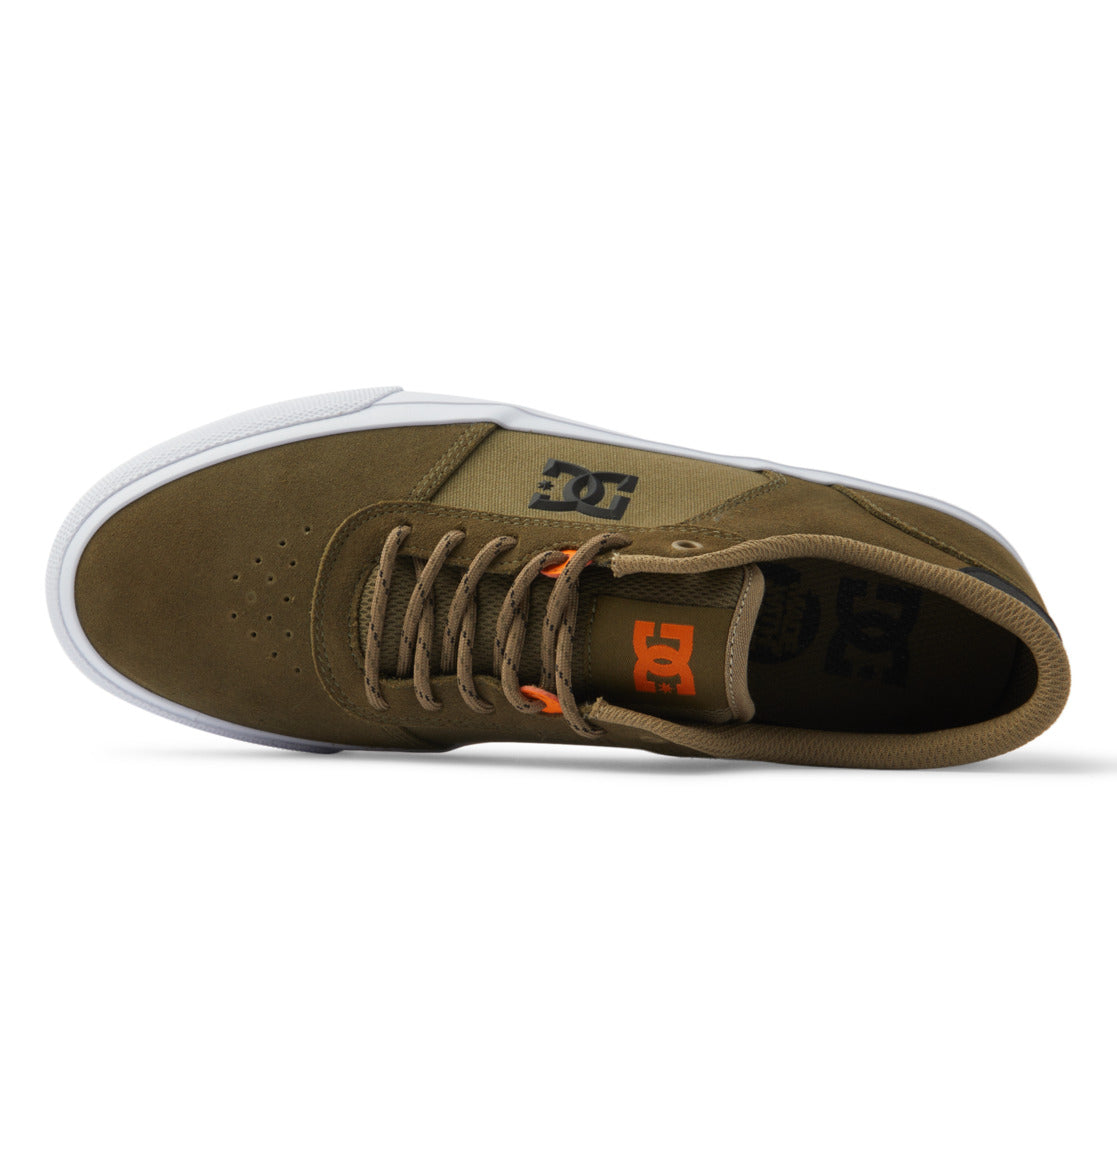 Chaussure de skate Dc Shoes Teknic - Camo Olive